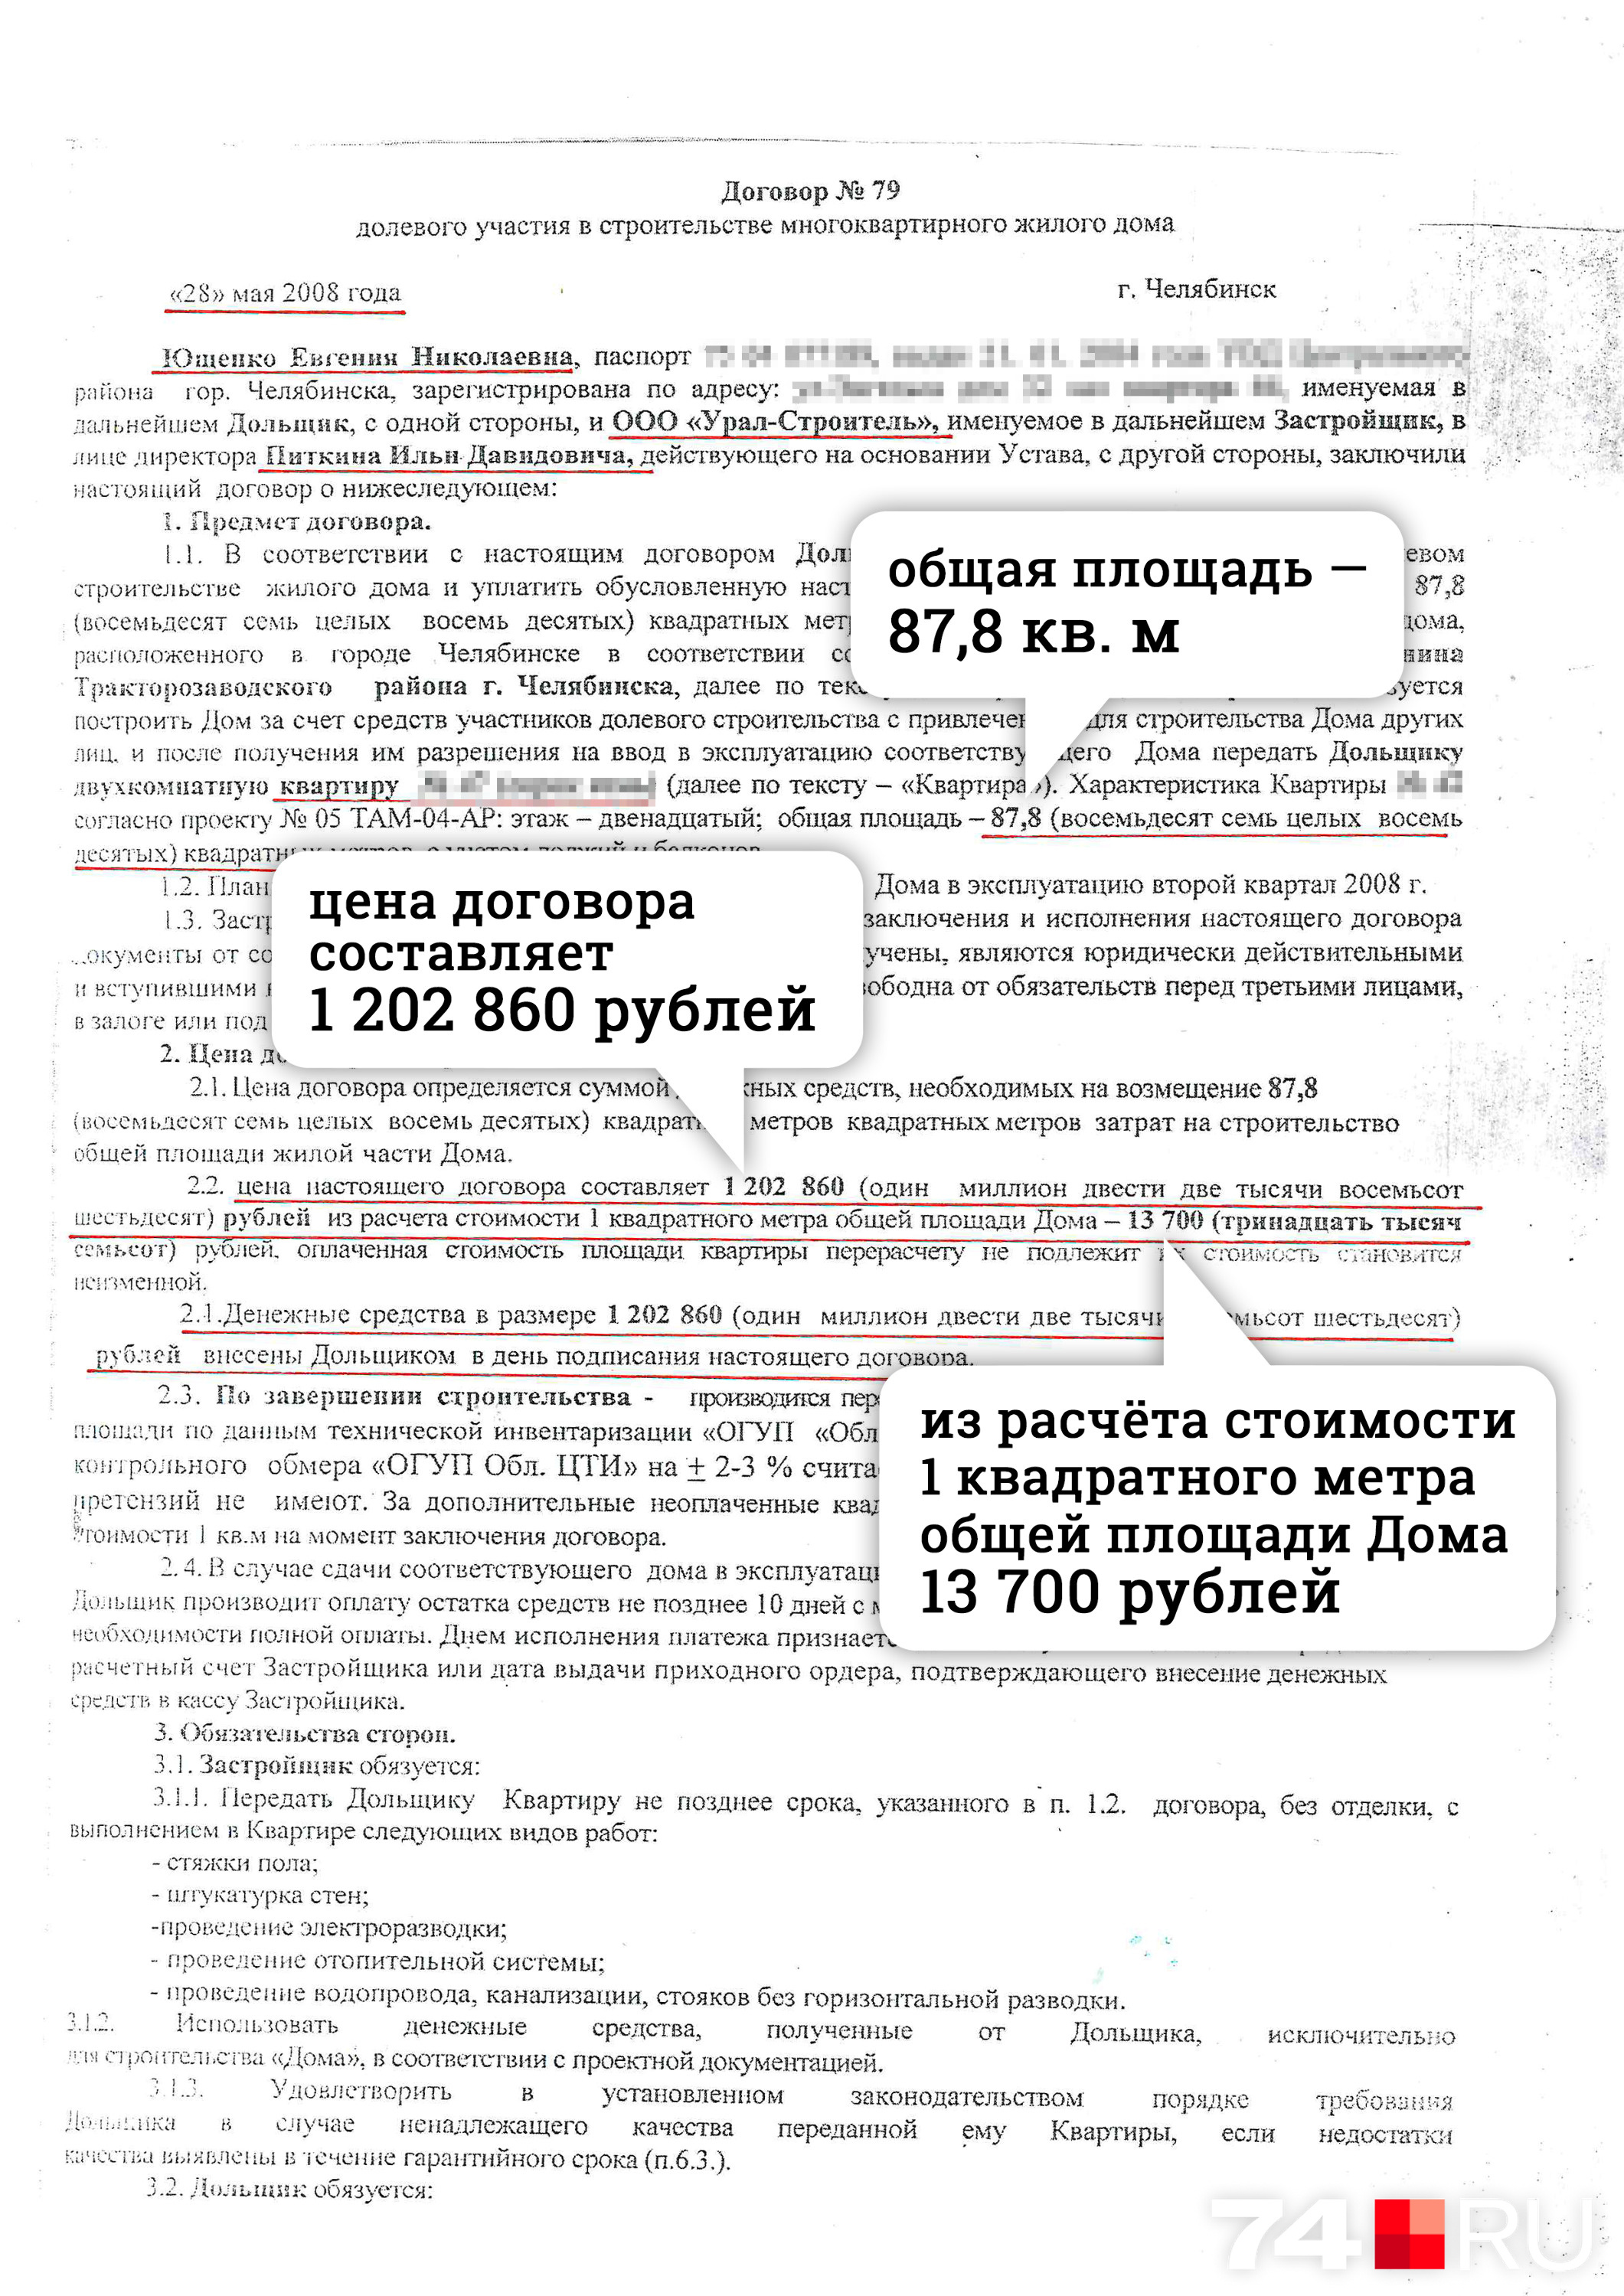 В договоре о долевом строительстве, подписанном дочерью Николая Ющенко с компанией «Урал-Строитель», очень привлекательные условия